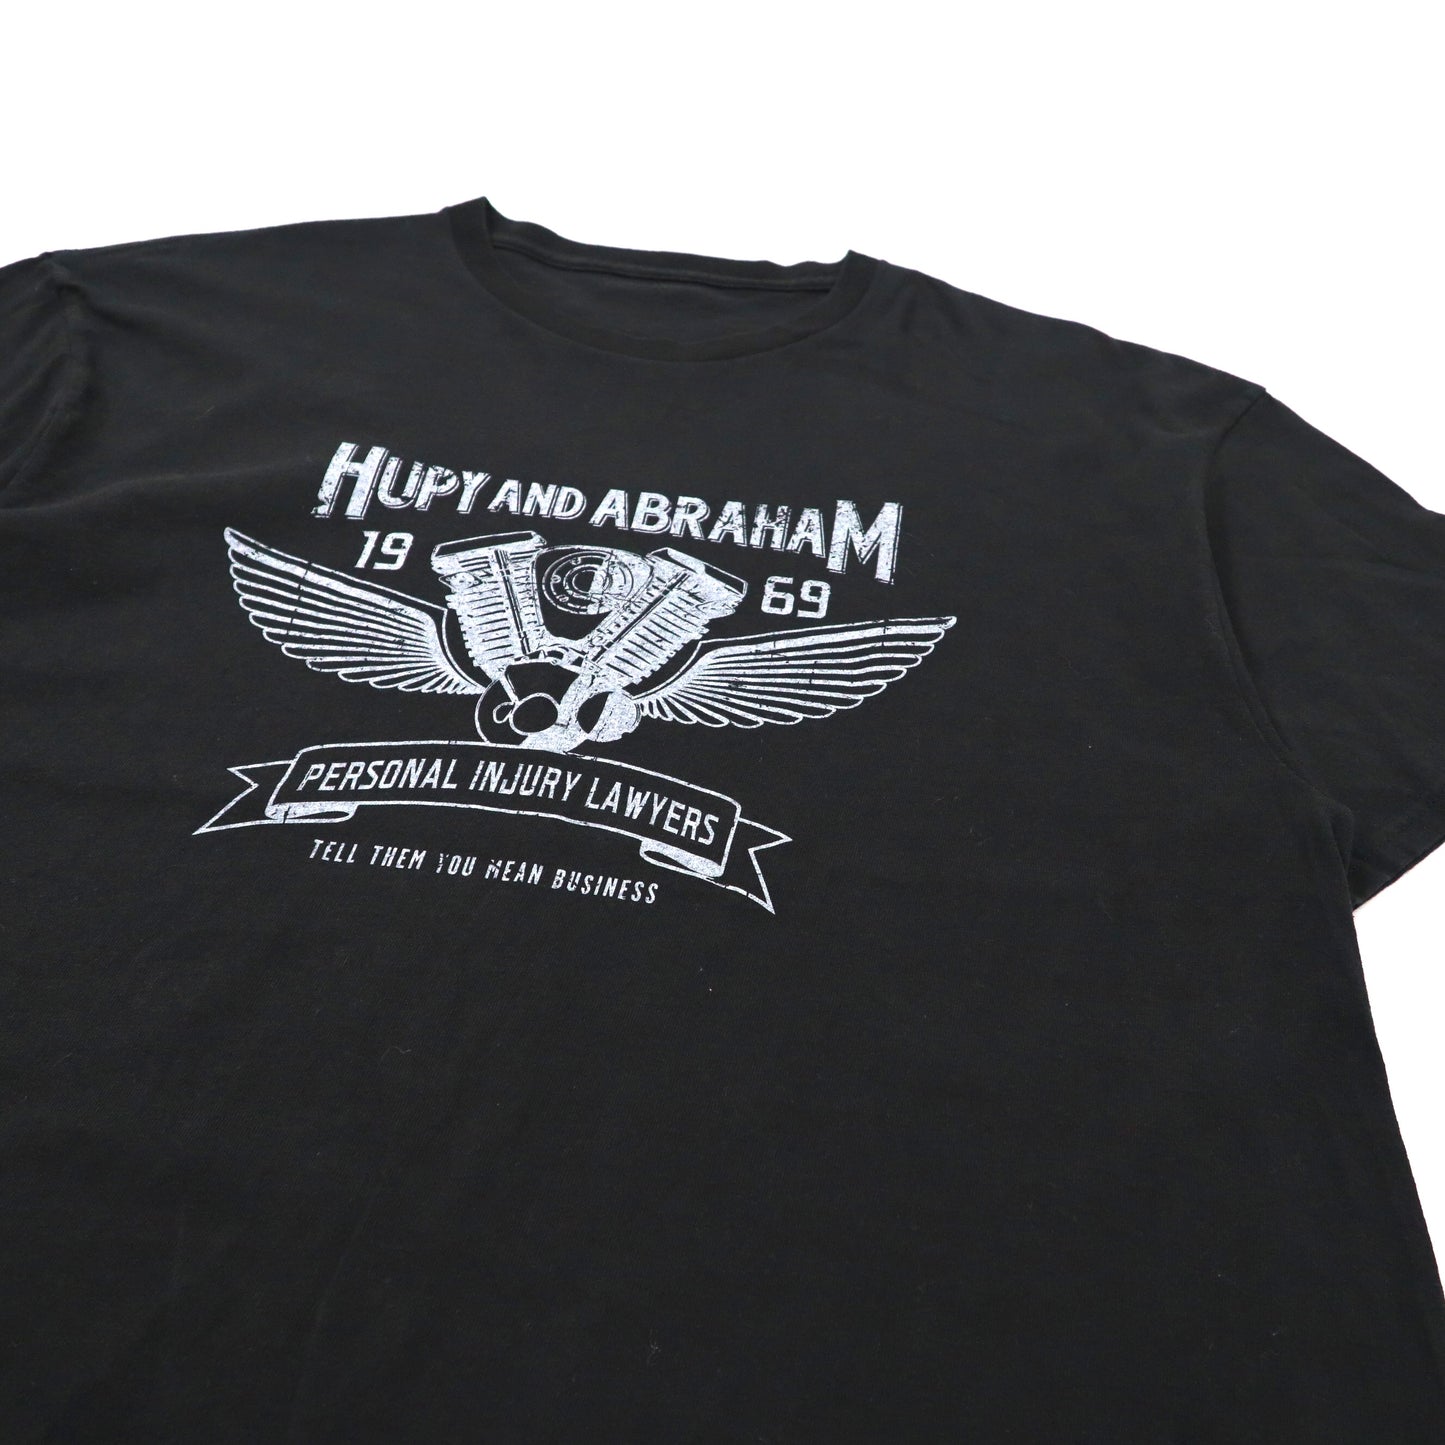 ビッグサイズ Tシャツ XL ブラック コットン HUPY AND ABRAHAM モーターサイクルプリント